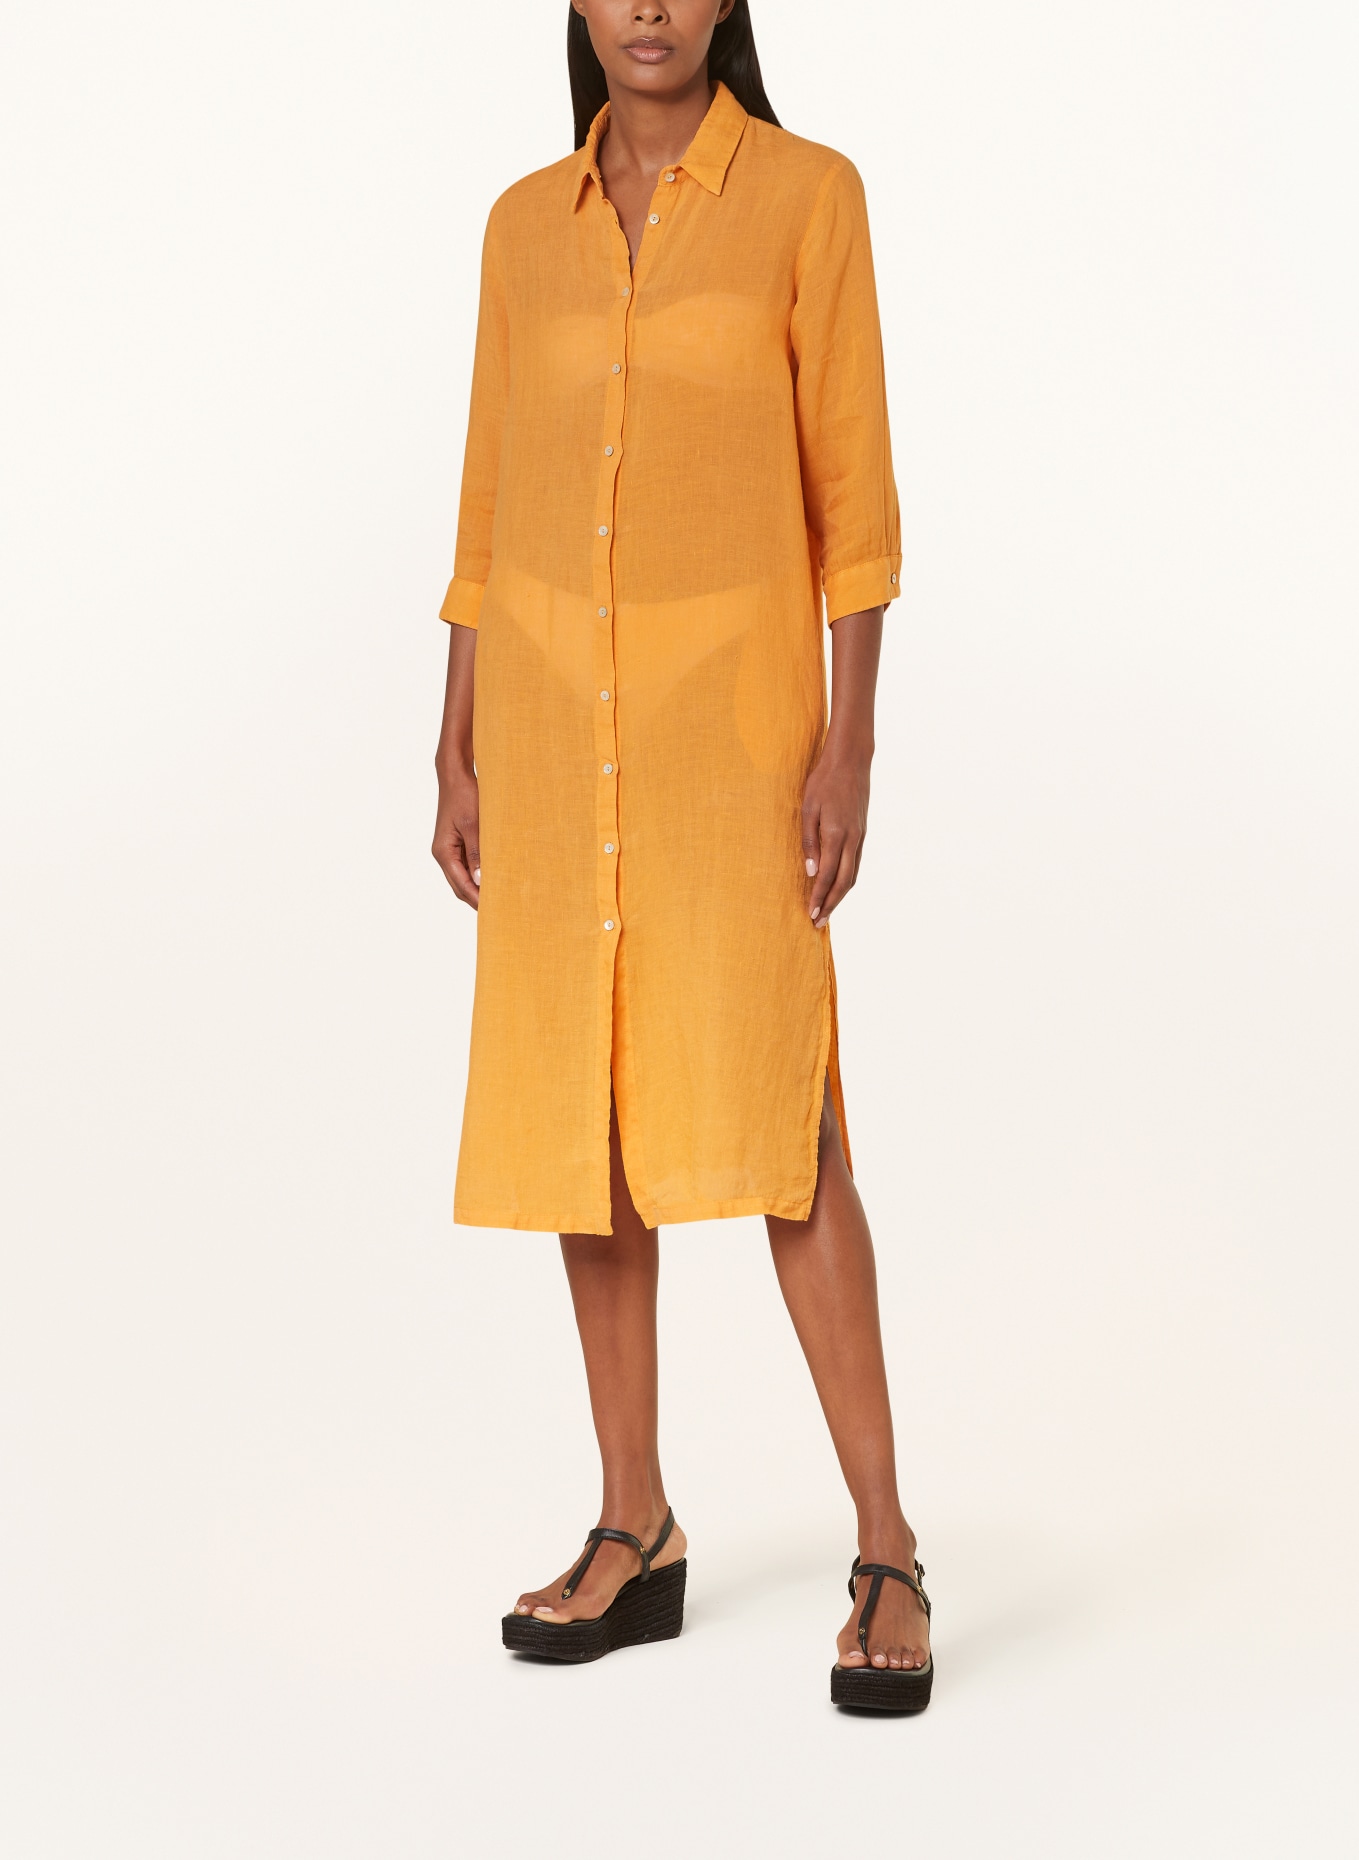 120%lino Beach dress made of linen, Color: ORANGE (Image 2)